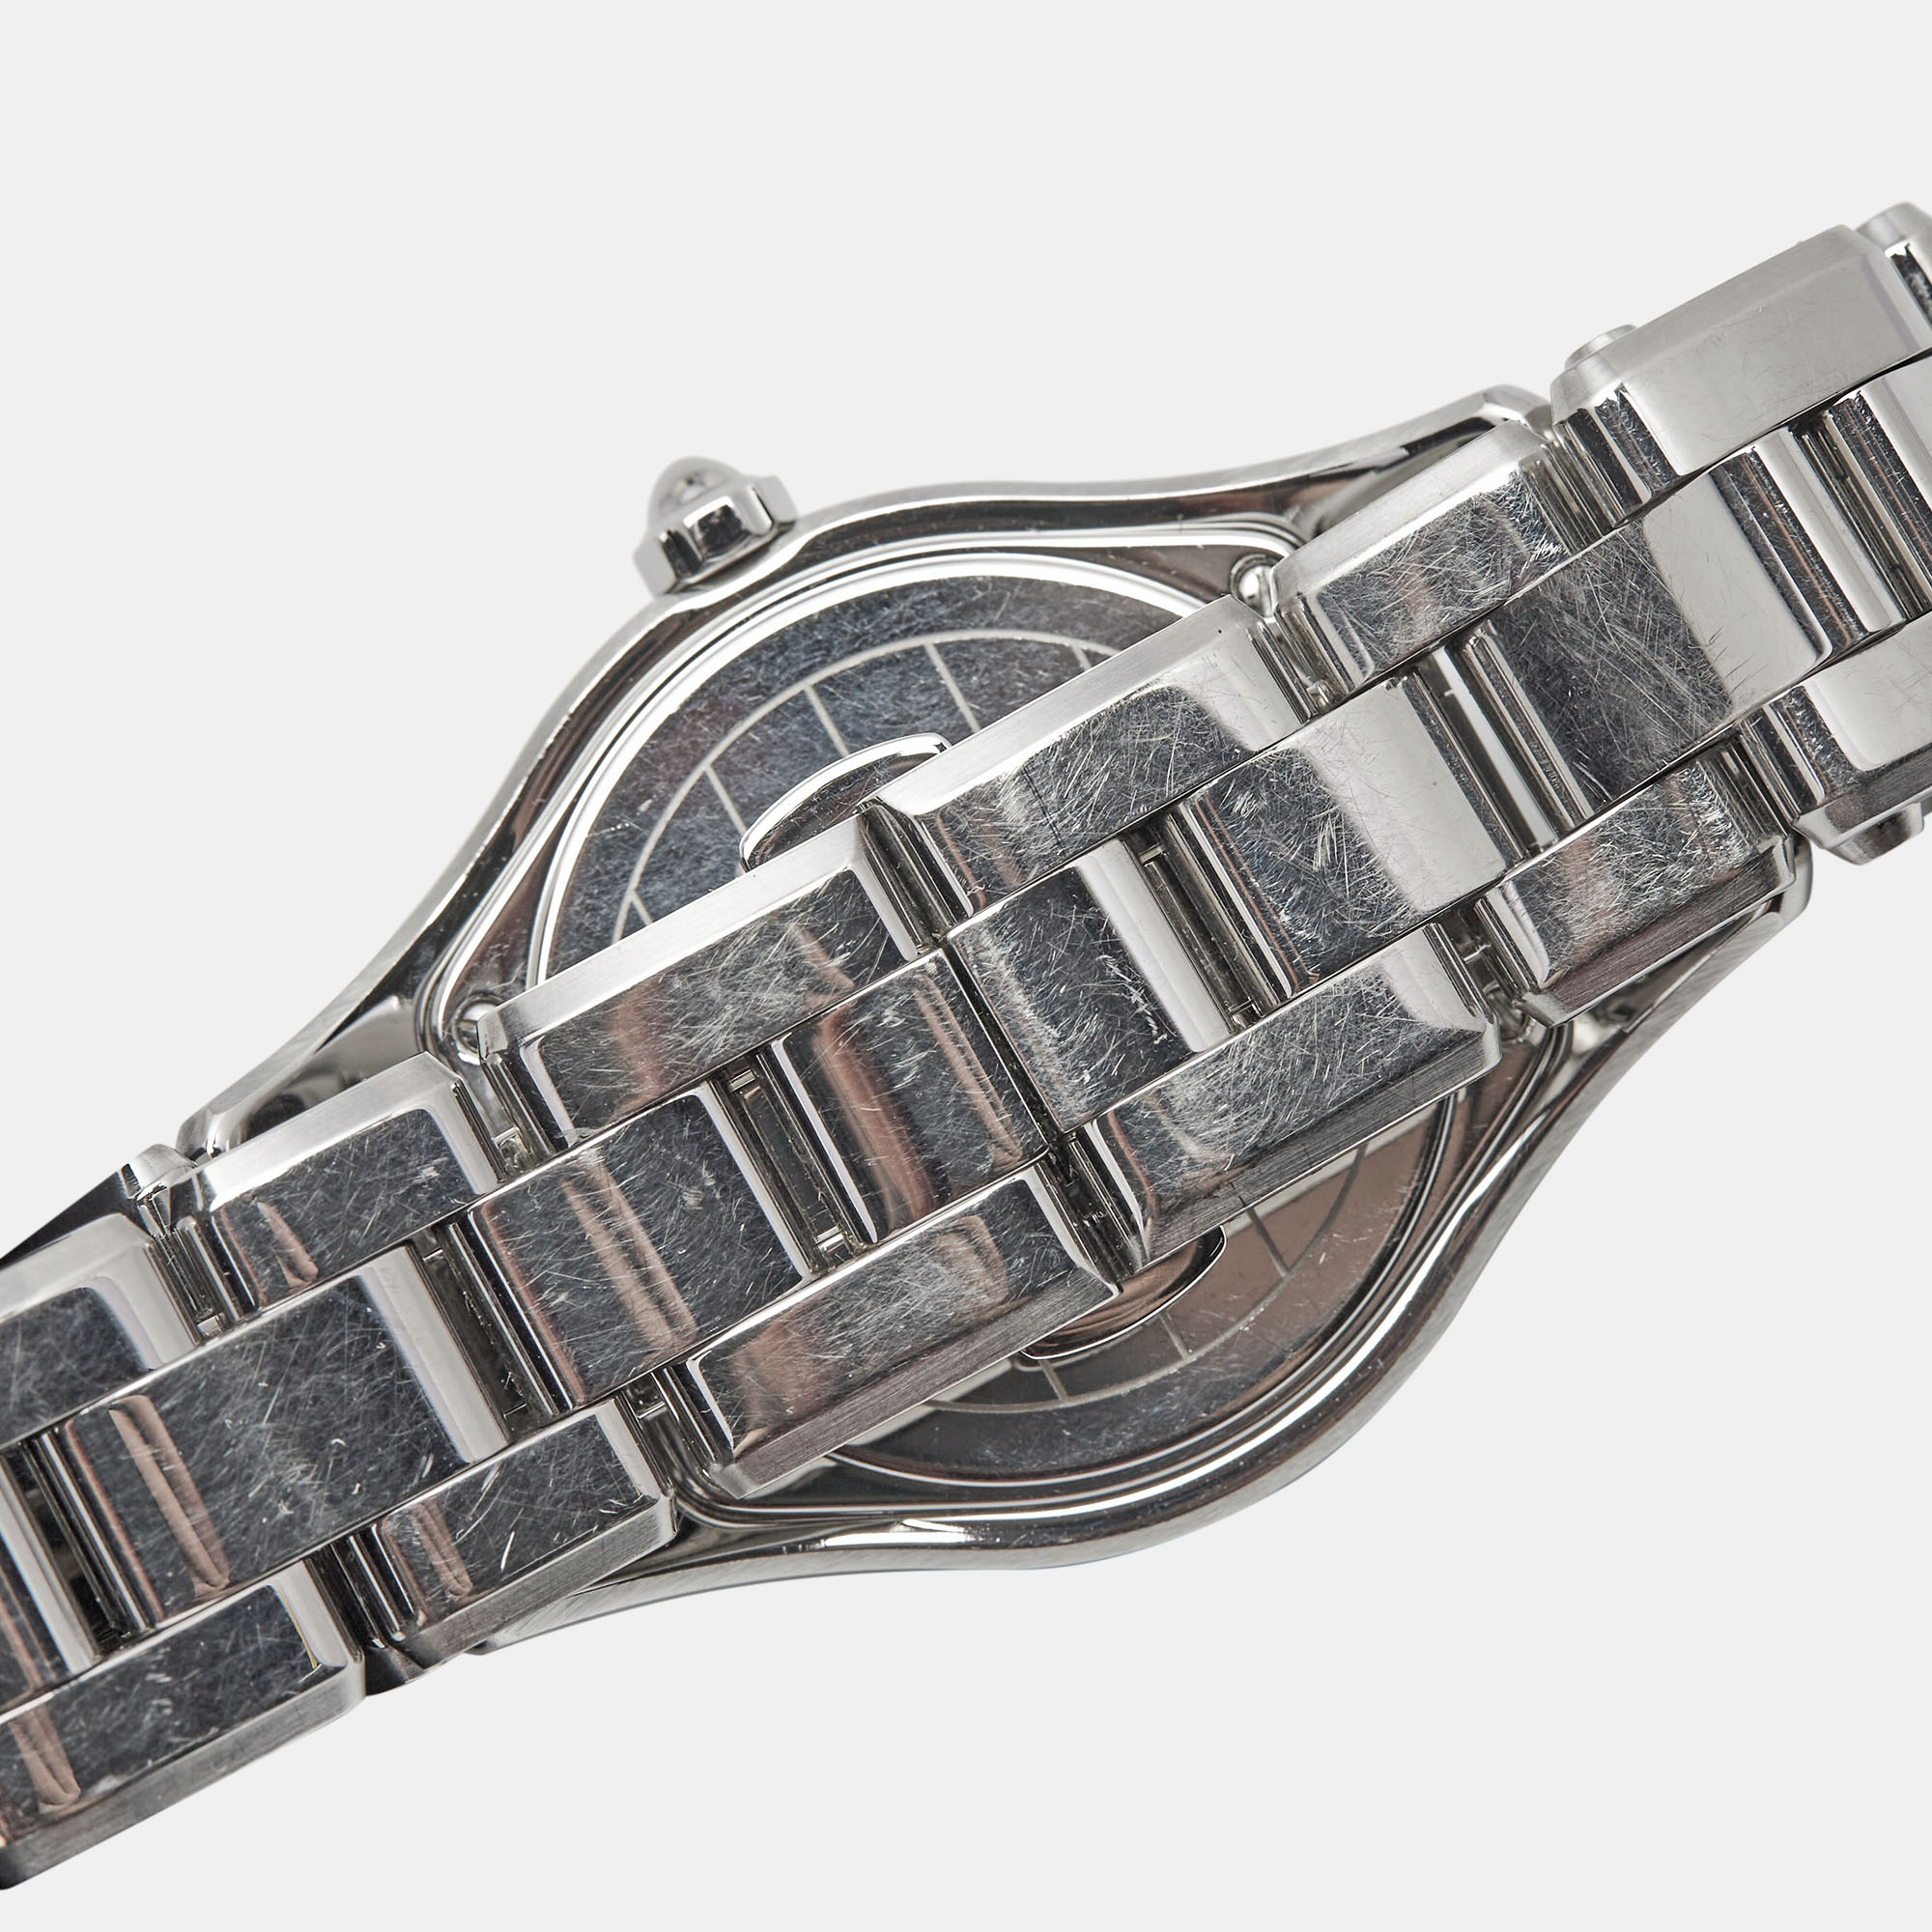 Baume & Mercier Mother Of Pearl Diamond Stainless Steel Linea 10072 Women's Wristwatch 32 Mm